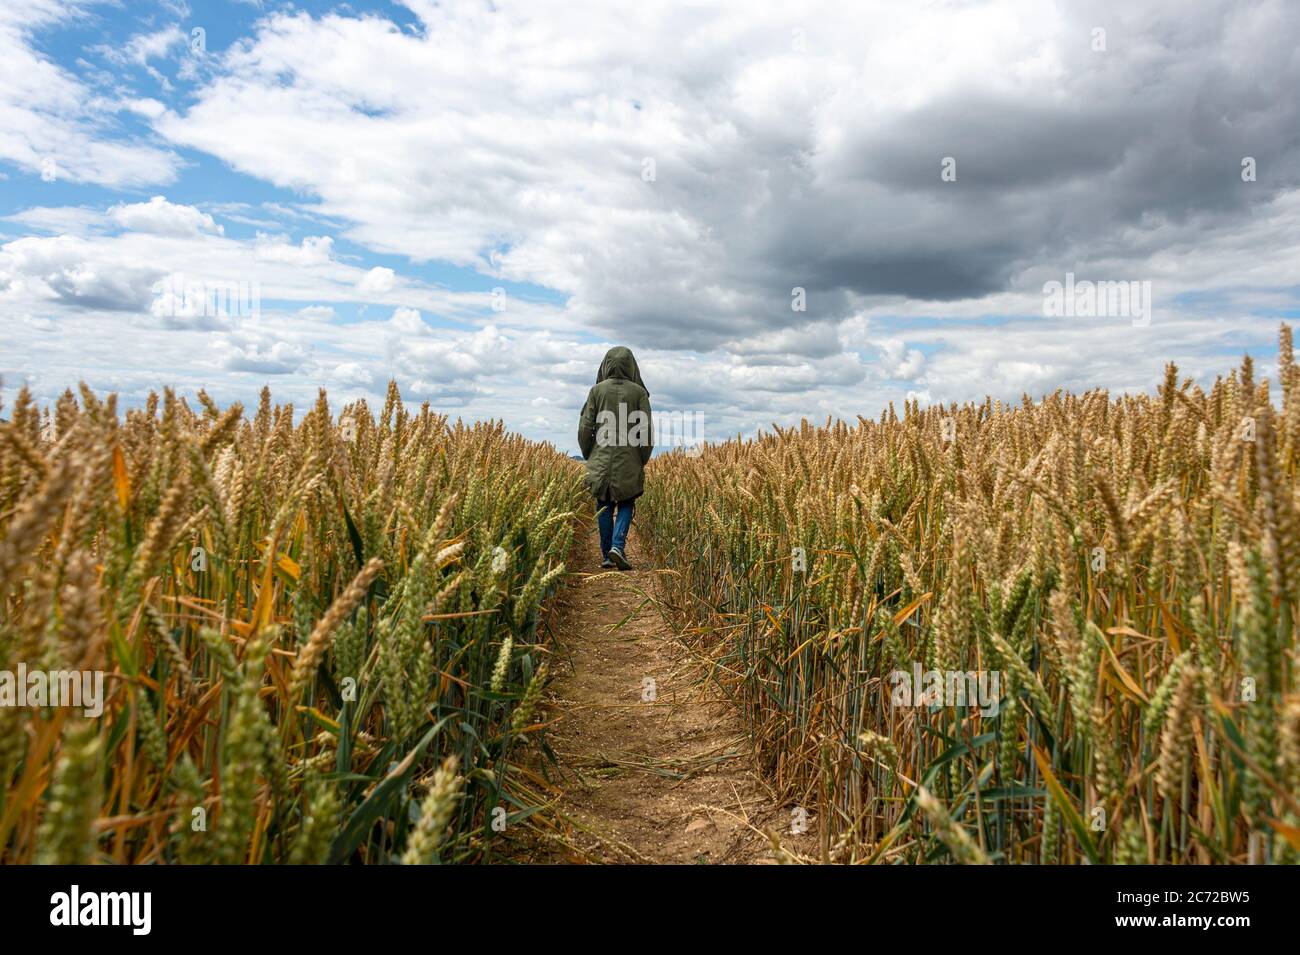 Rückansicht einer Person, die durch ein Weizenfeld geht. Dramatischer Himmel. Stockfoto